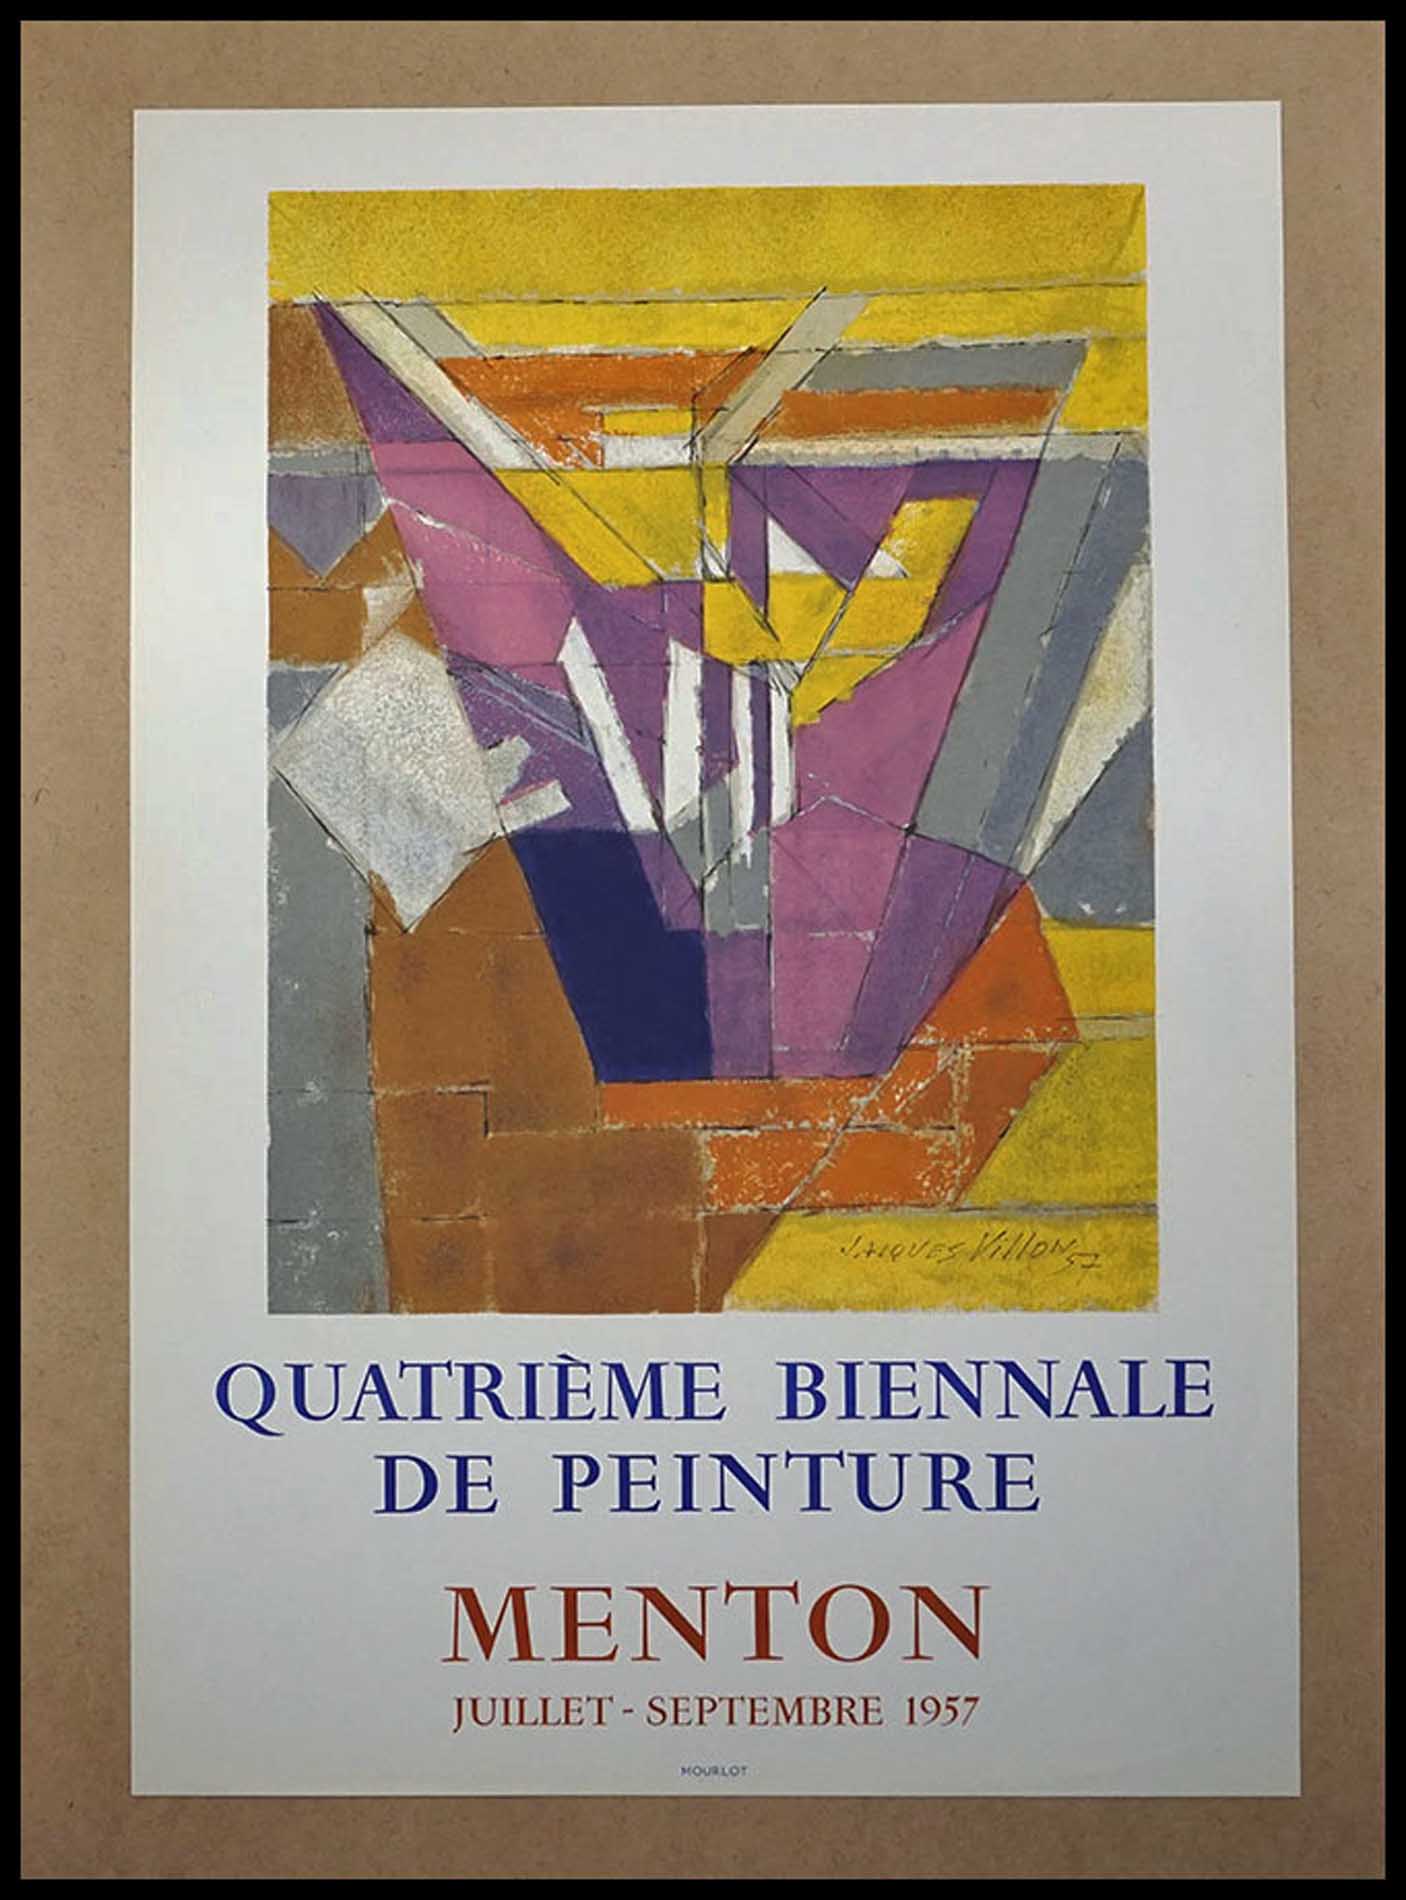 Jacques Villon, Quatrieme Biennale de peinture, Menton